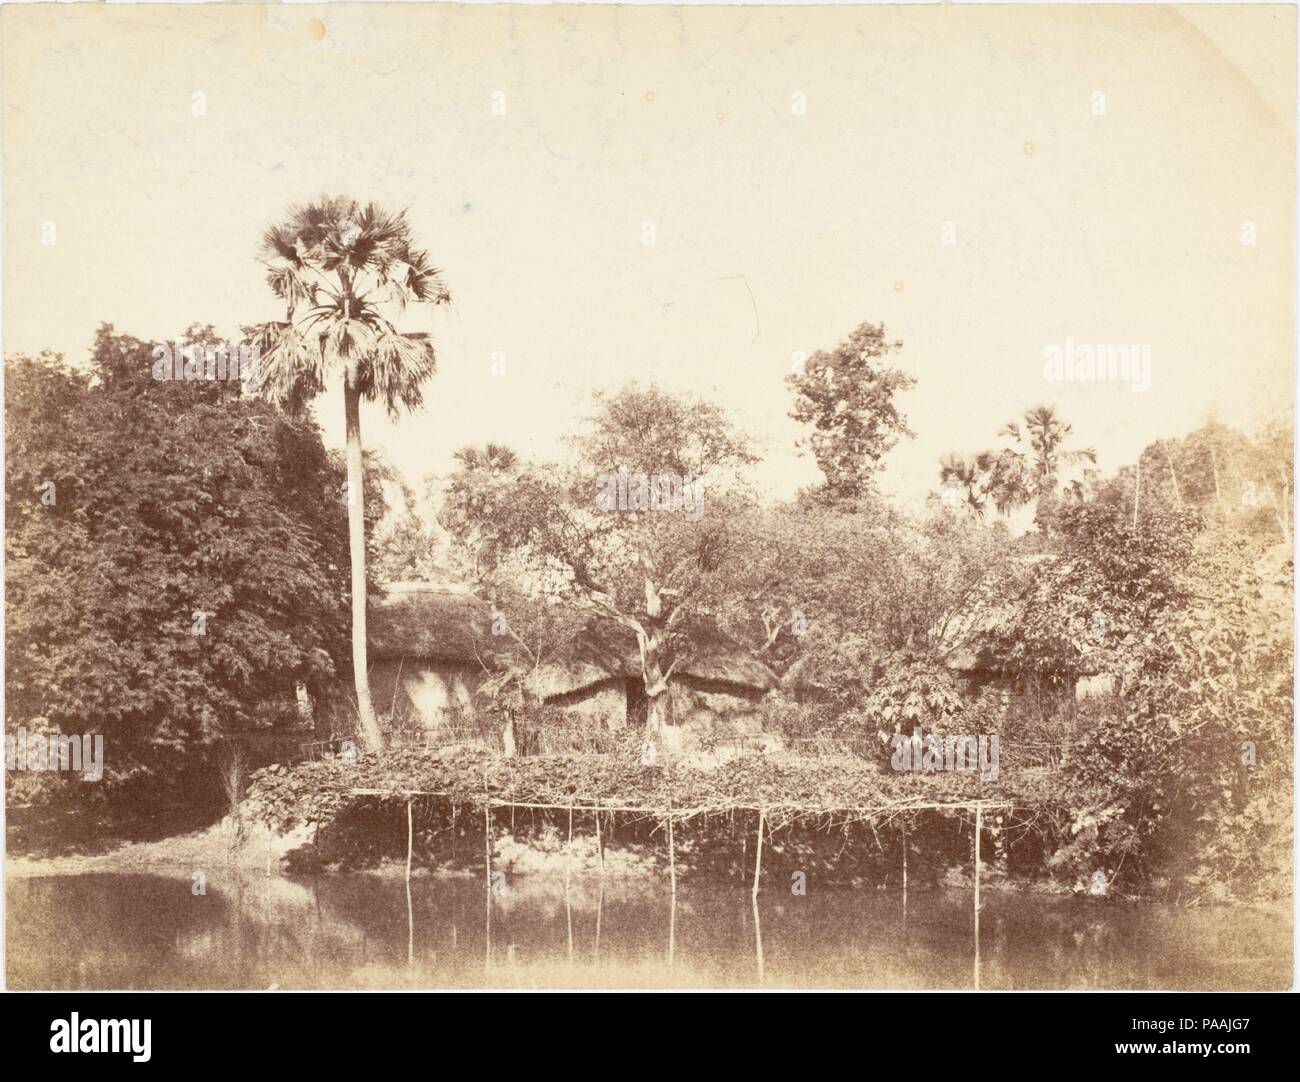 [Vue de la Jungle, le Bengale]. Artiste : le capitaine R. B. Hill. Dimensions : Image : 19,1 x 25 cm (7 1/2 x 9 13/16 in.). Date : 1850. Musée : Metropolitan Museum of Art, New York, USA. Banque D'Images